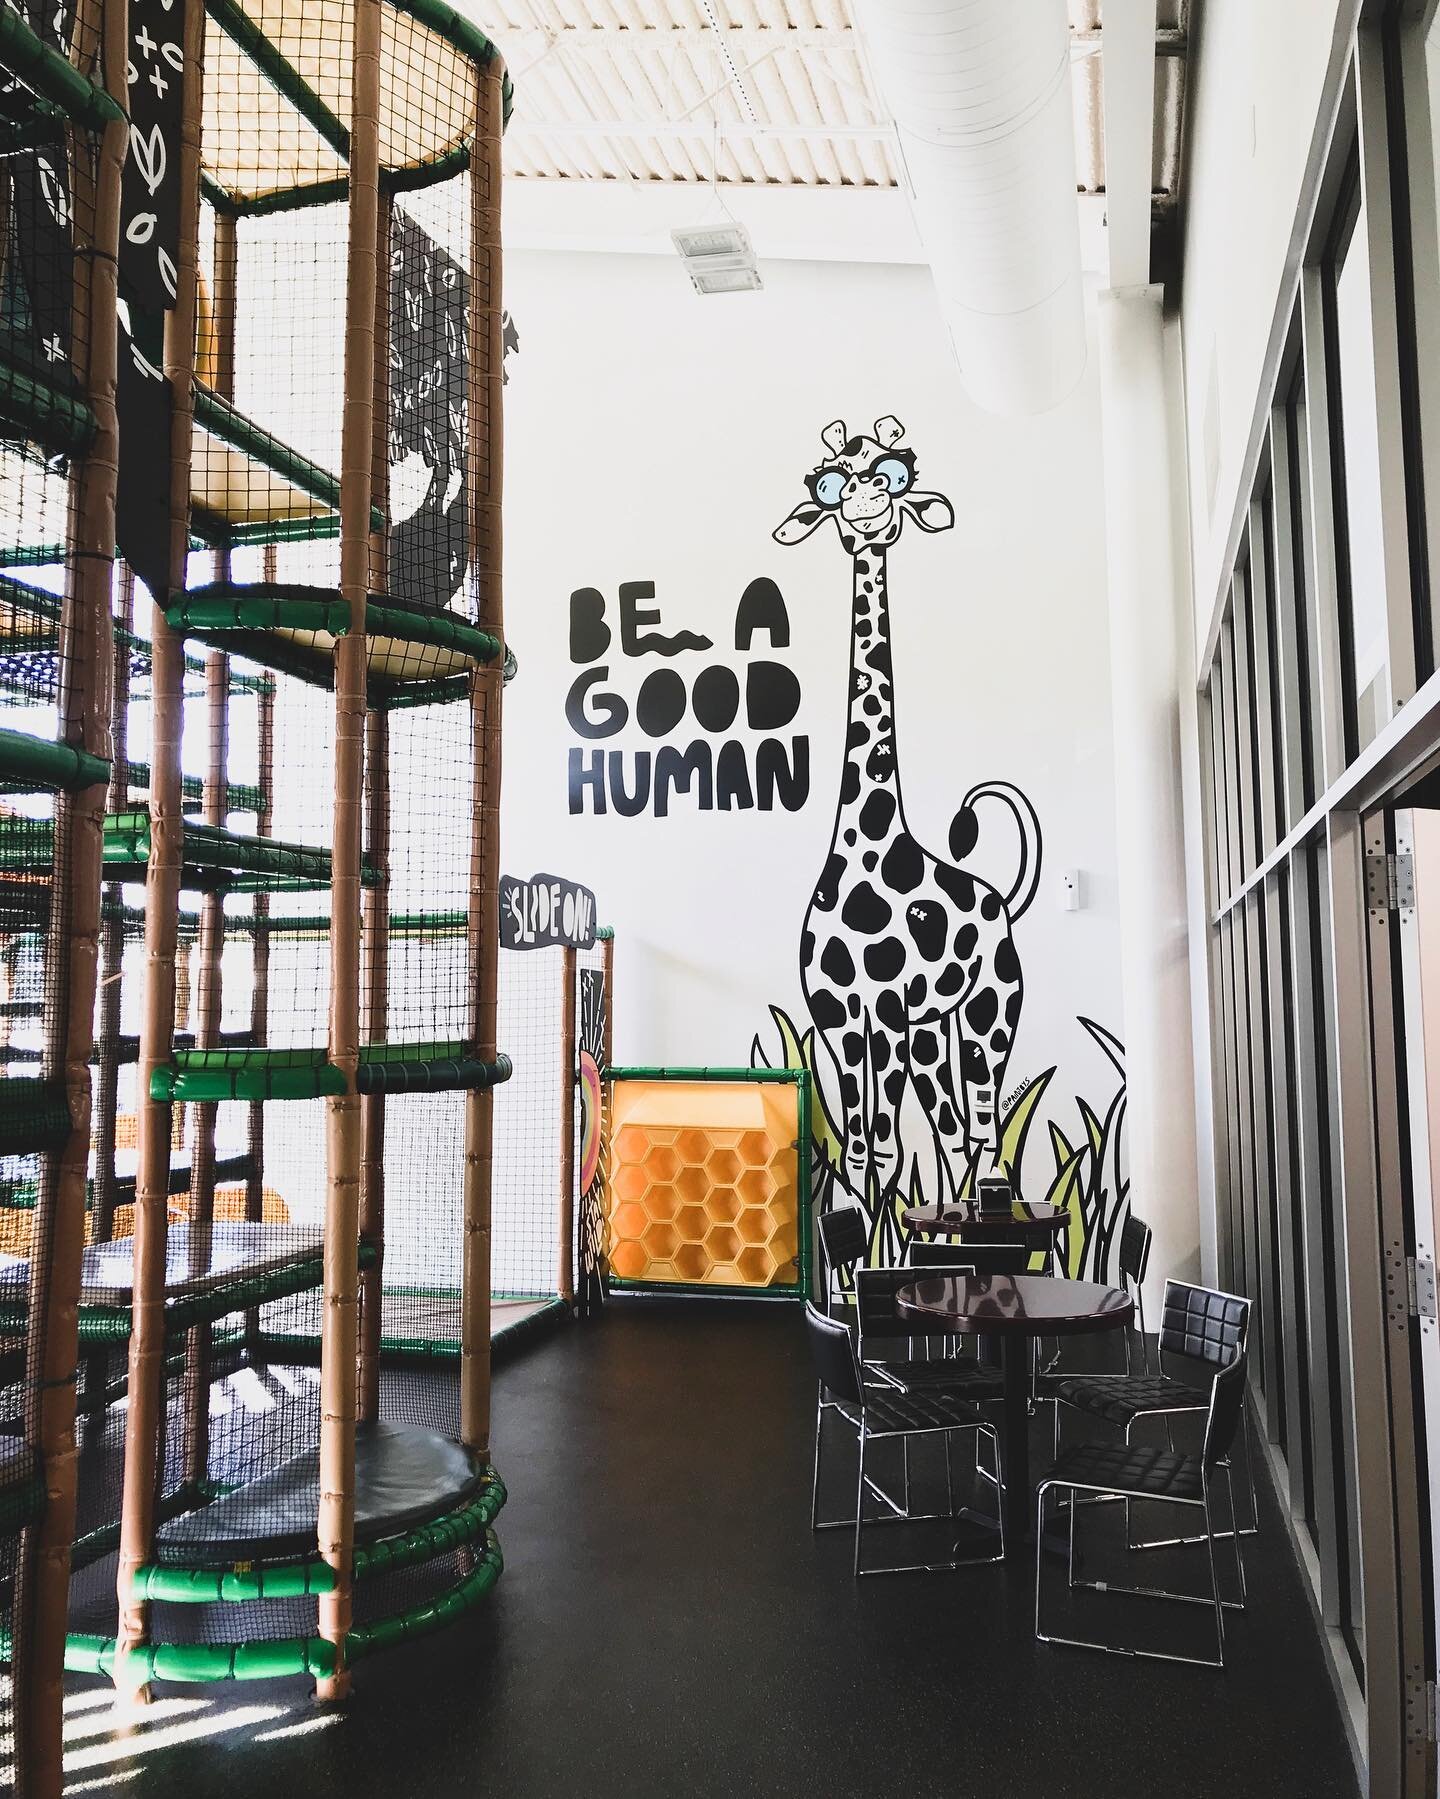 Willis the giraffe: be a good human